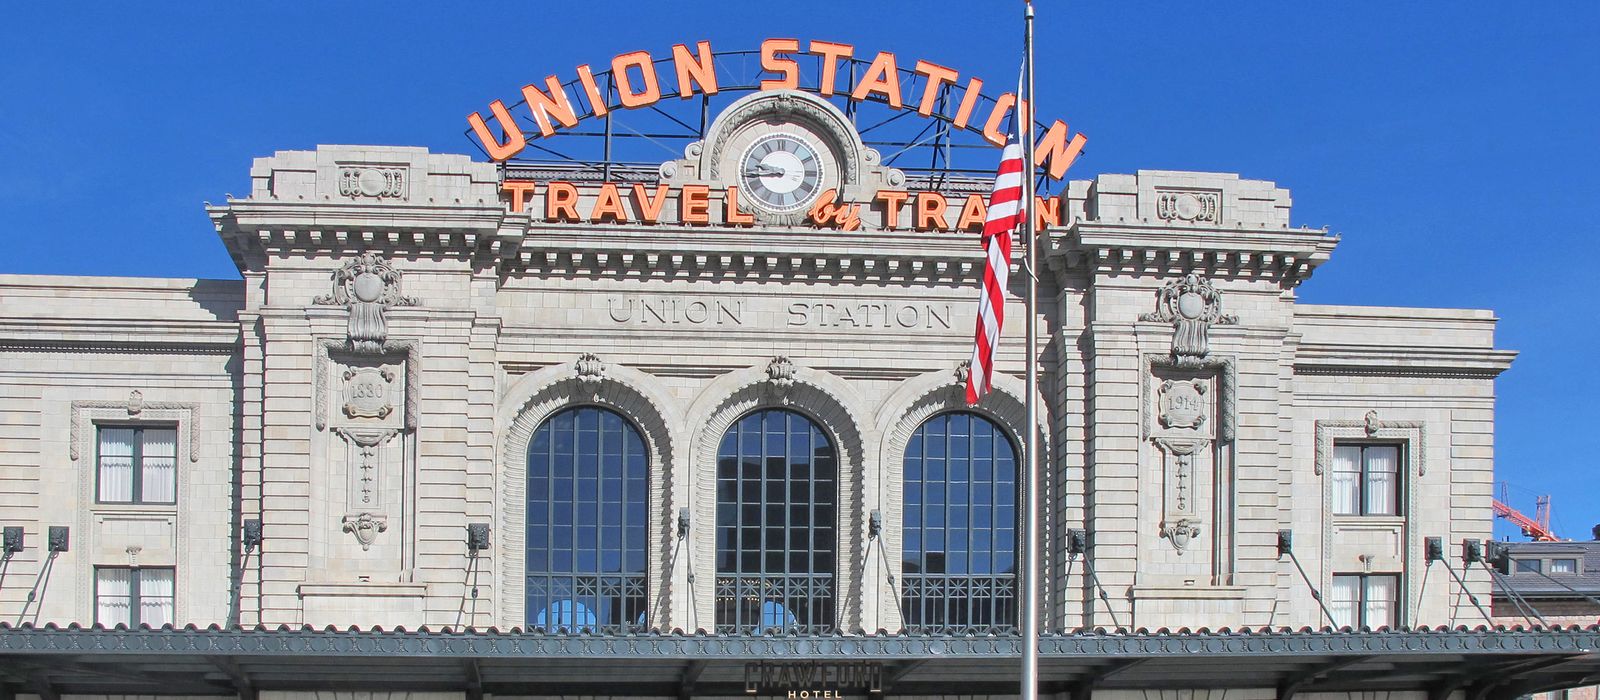 Denver Union Station, Colorado